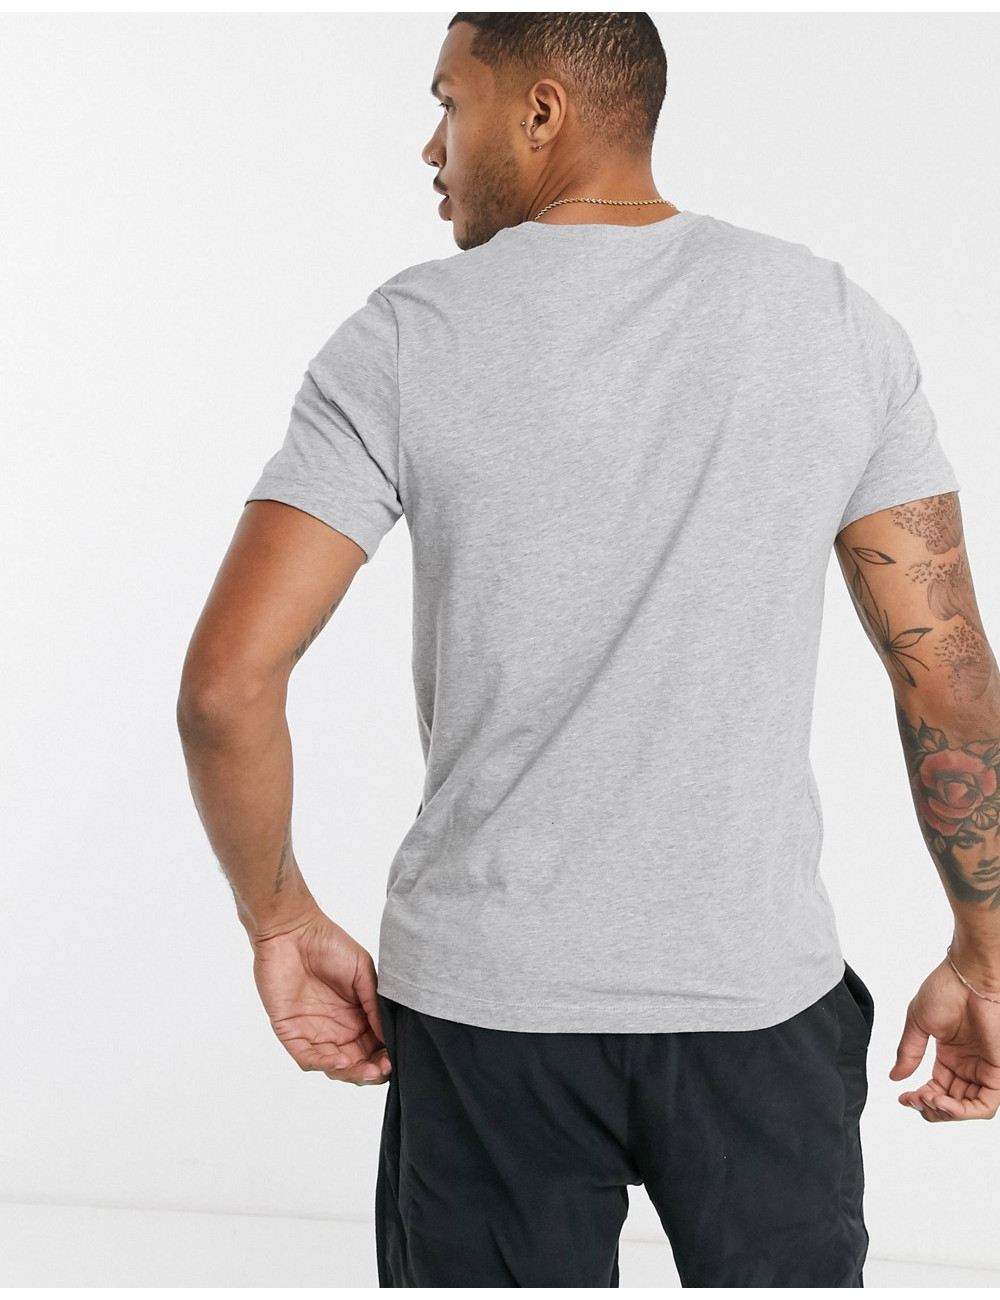 Nike Club t-shirt in grey